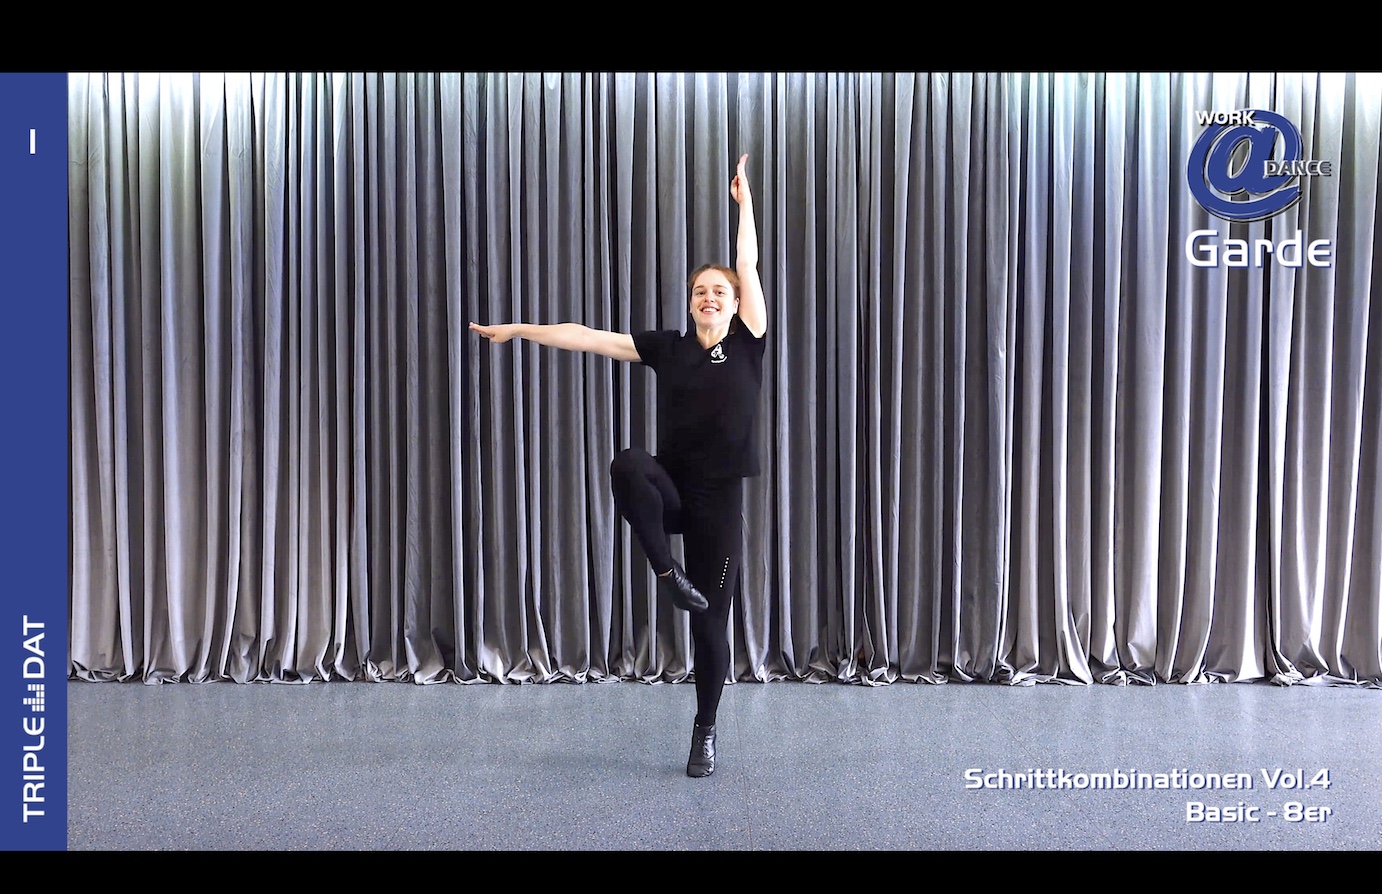 Work@Dance Garde Schrittkombinationen 04 - Basic